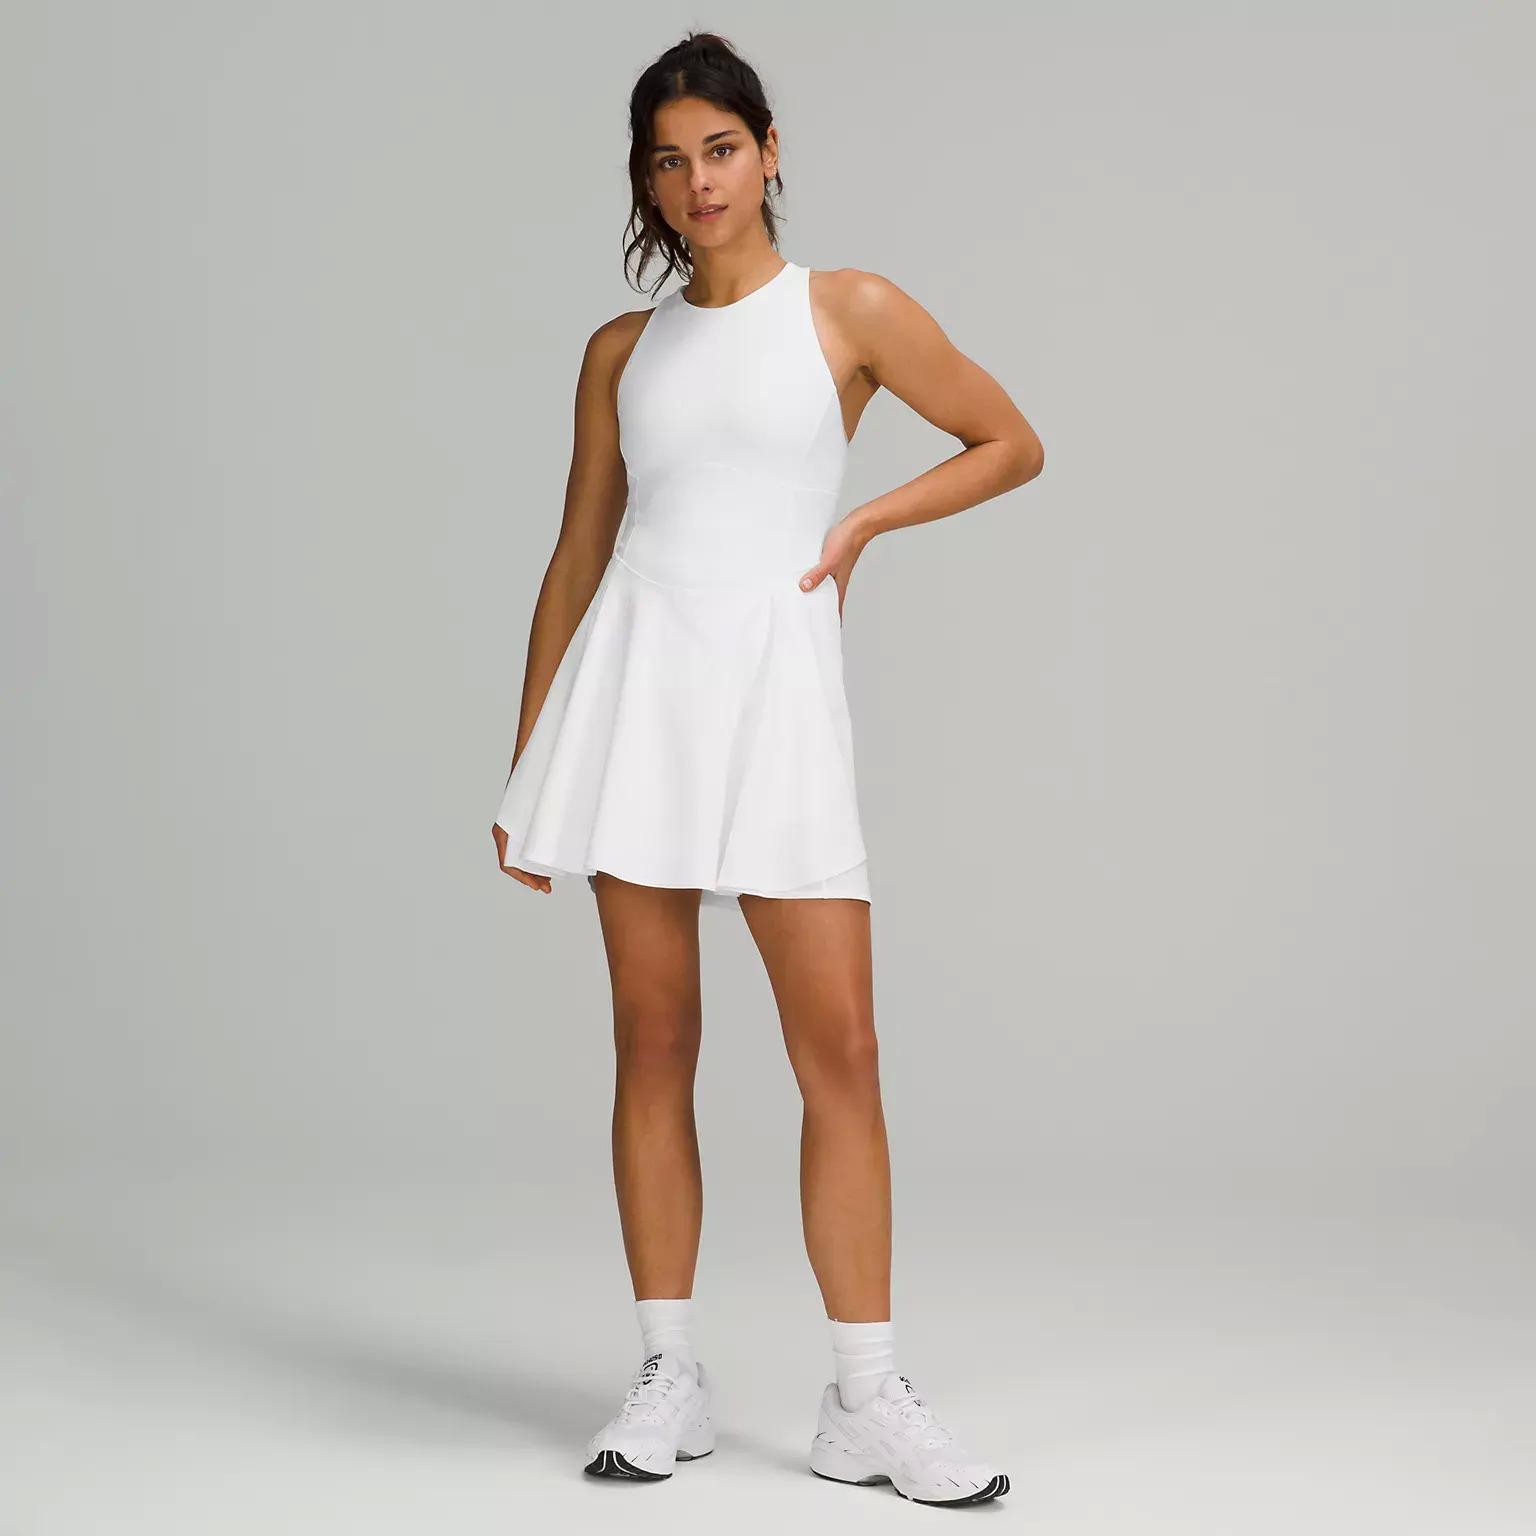 Lululemon Women's Court Crush Tennis Dress for $54 Shipped